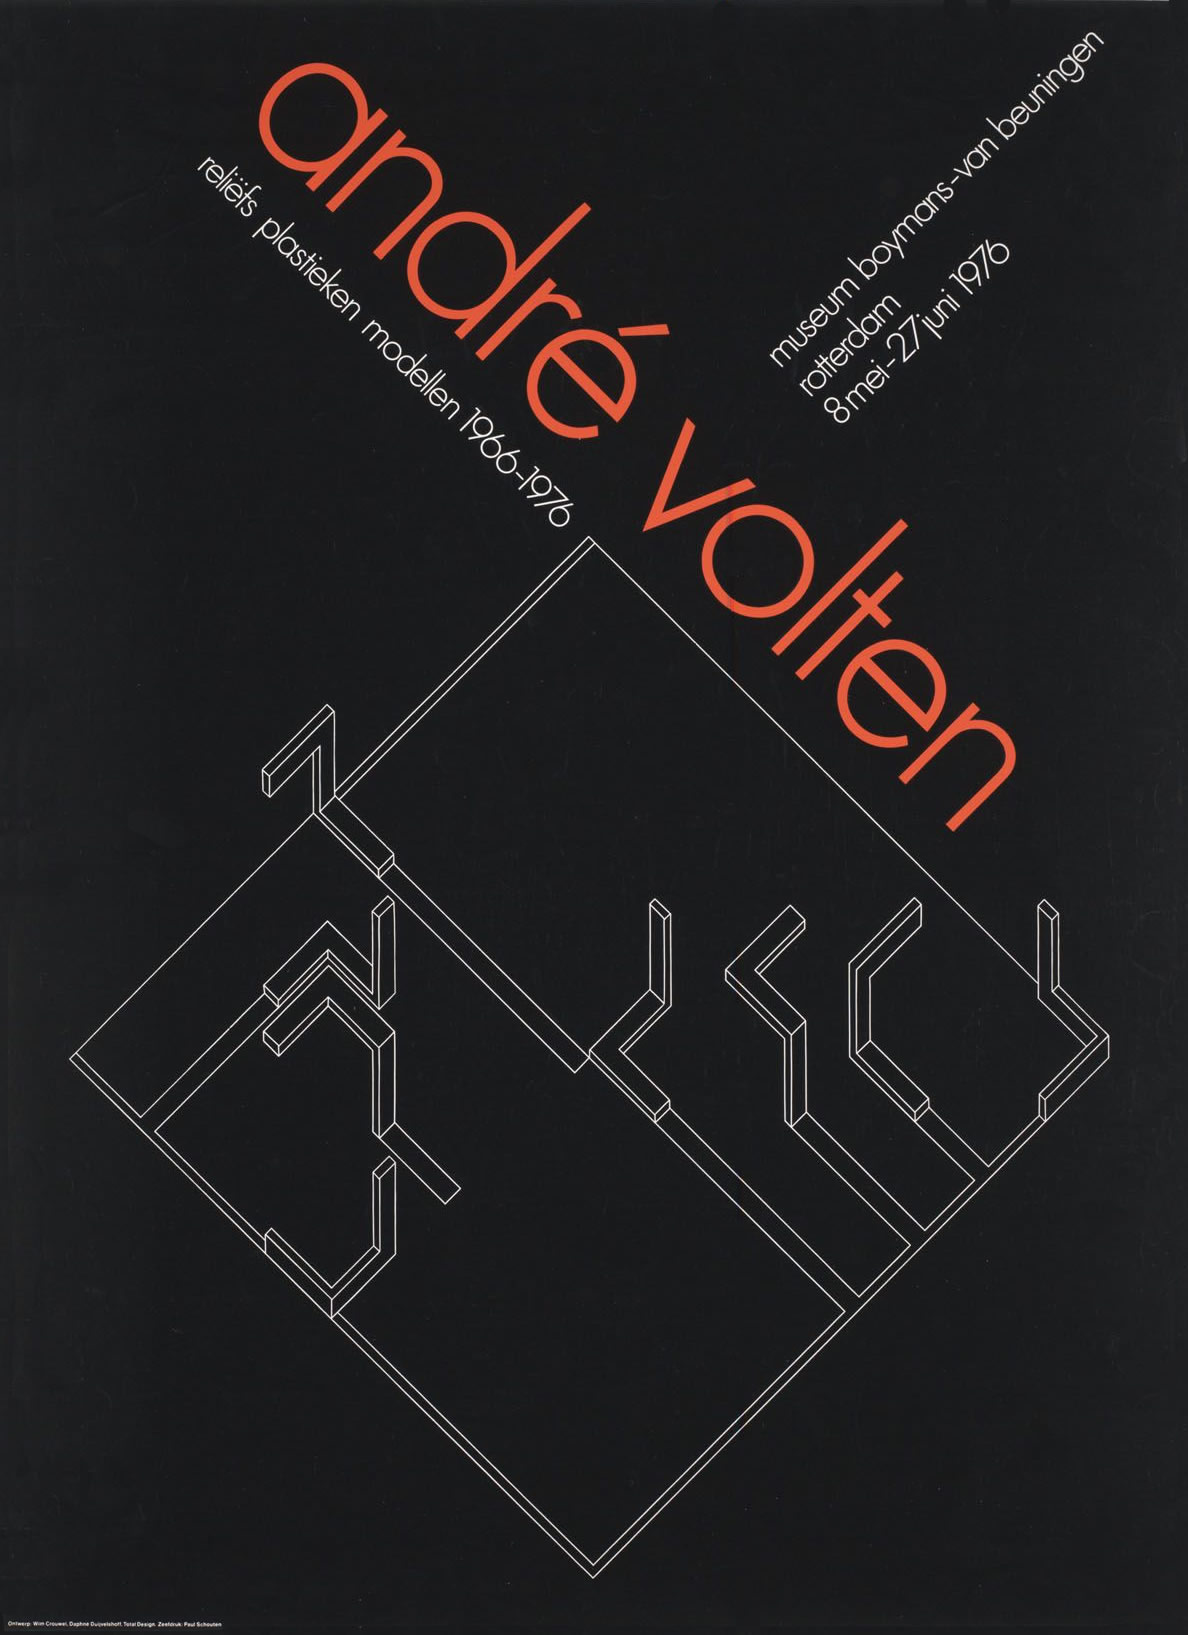 Wim Crouwel: André Volten reliëfs plastieken modellen 1966-1976. 1976